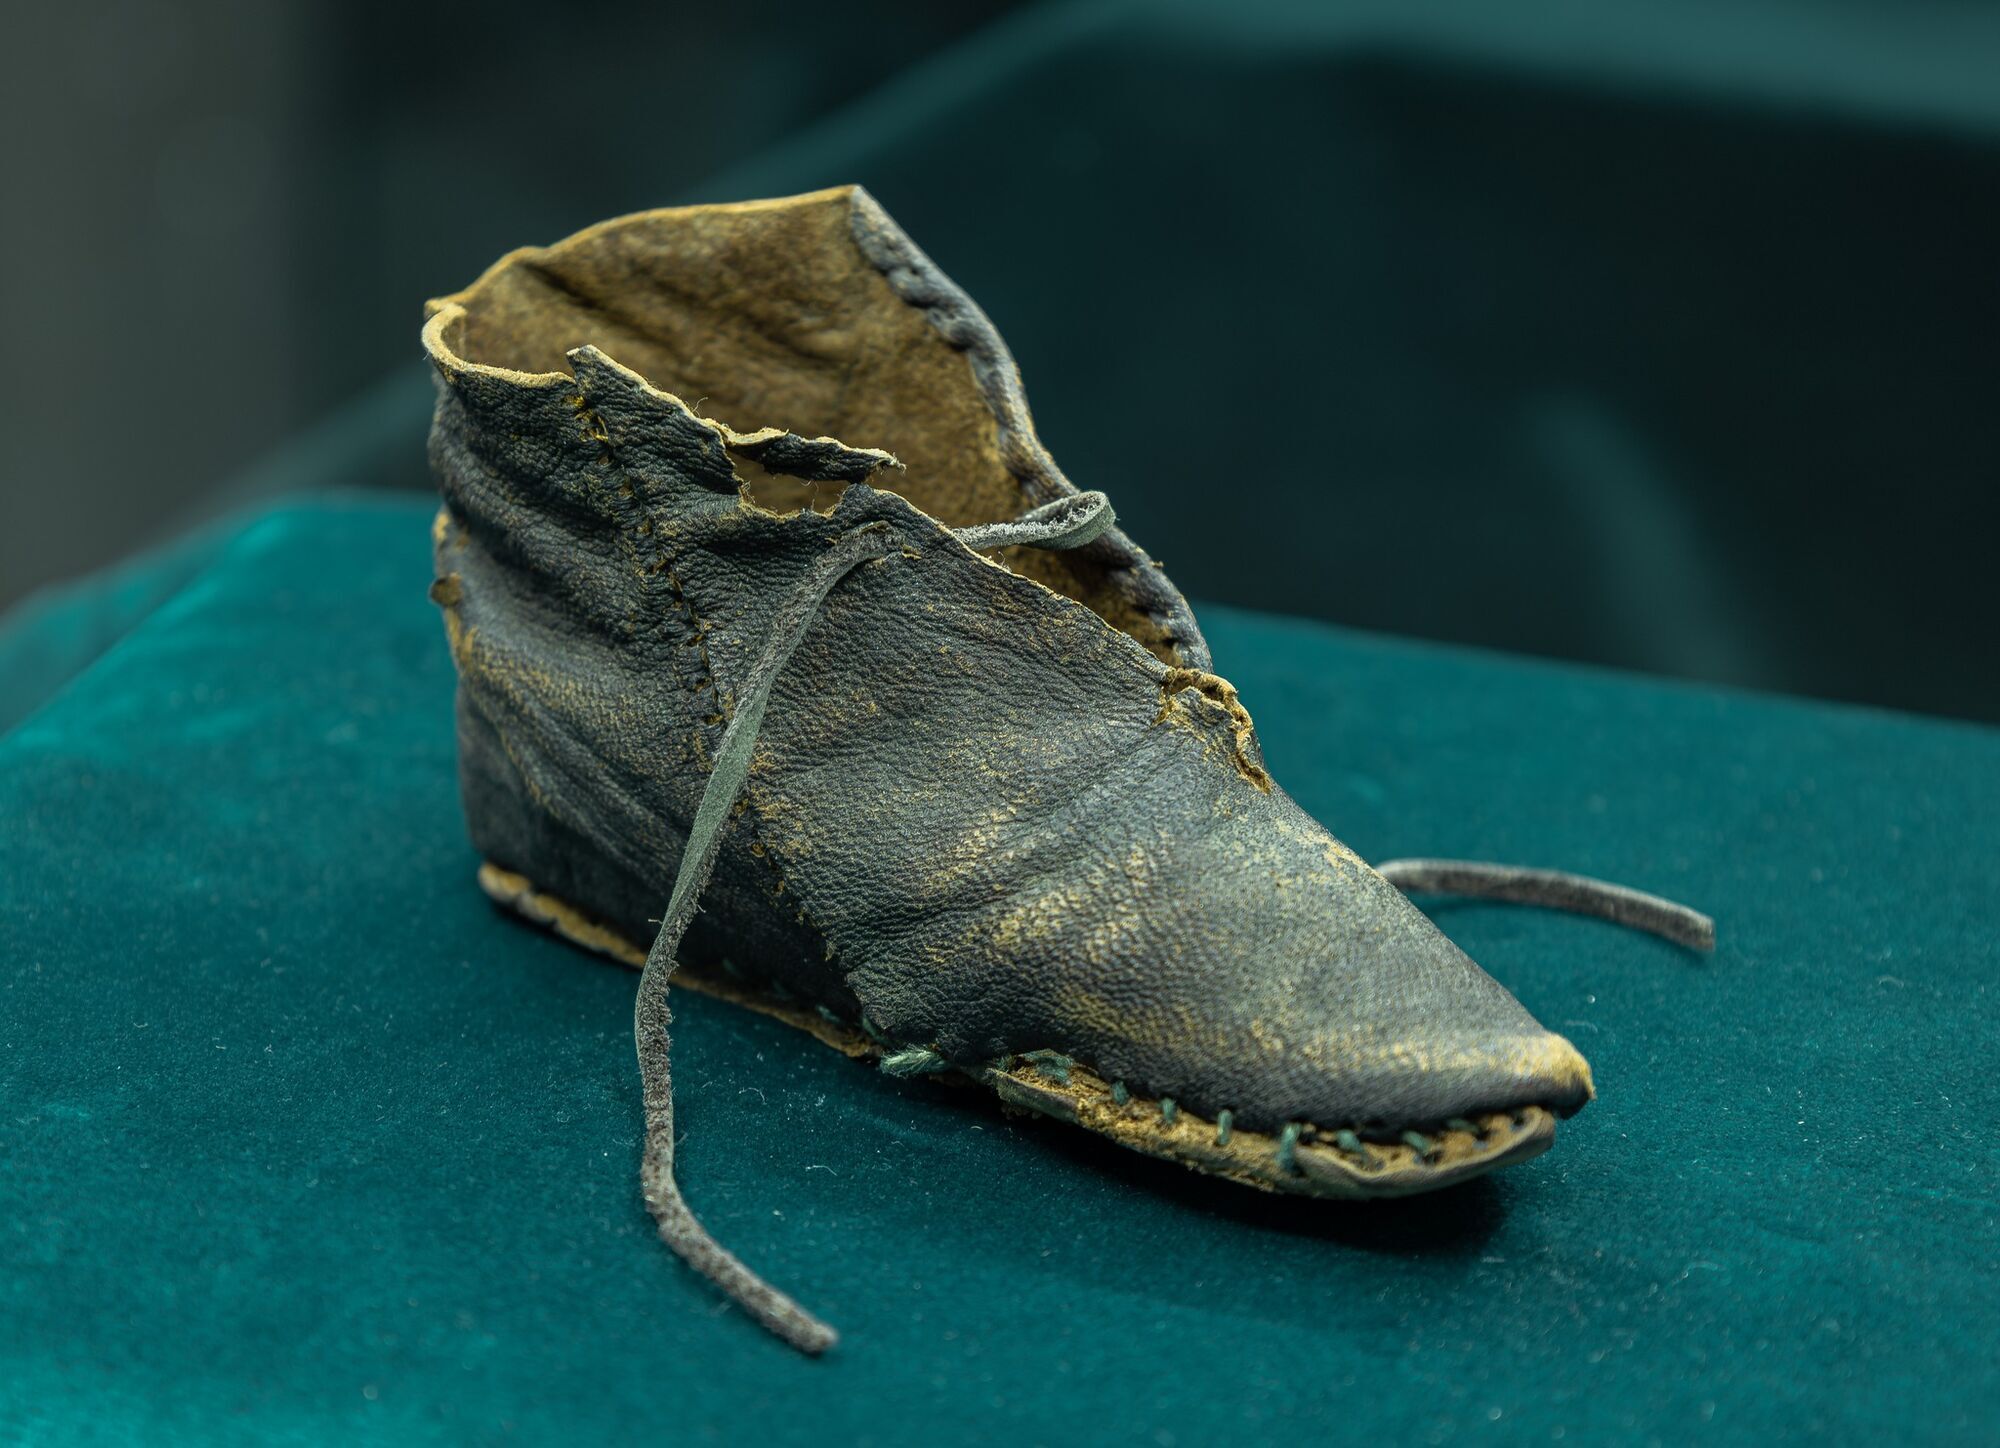 Археологи знайшли у Польщі середньовічний артефакт: тепер відомо, яке взуття у давнину носили діти (фото)